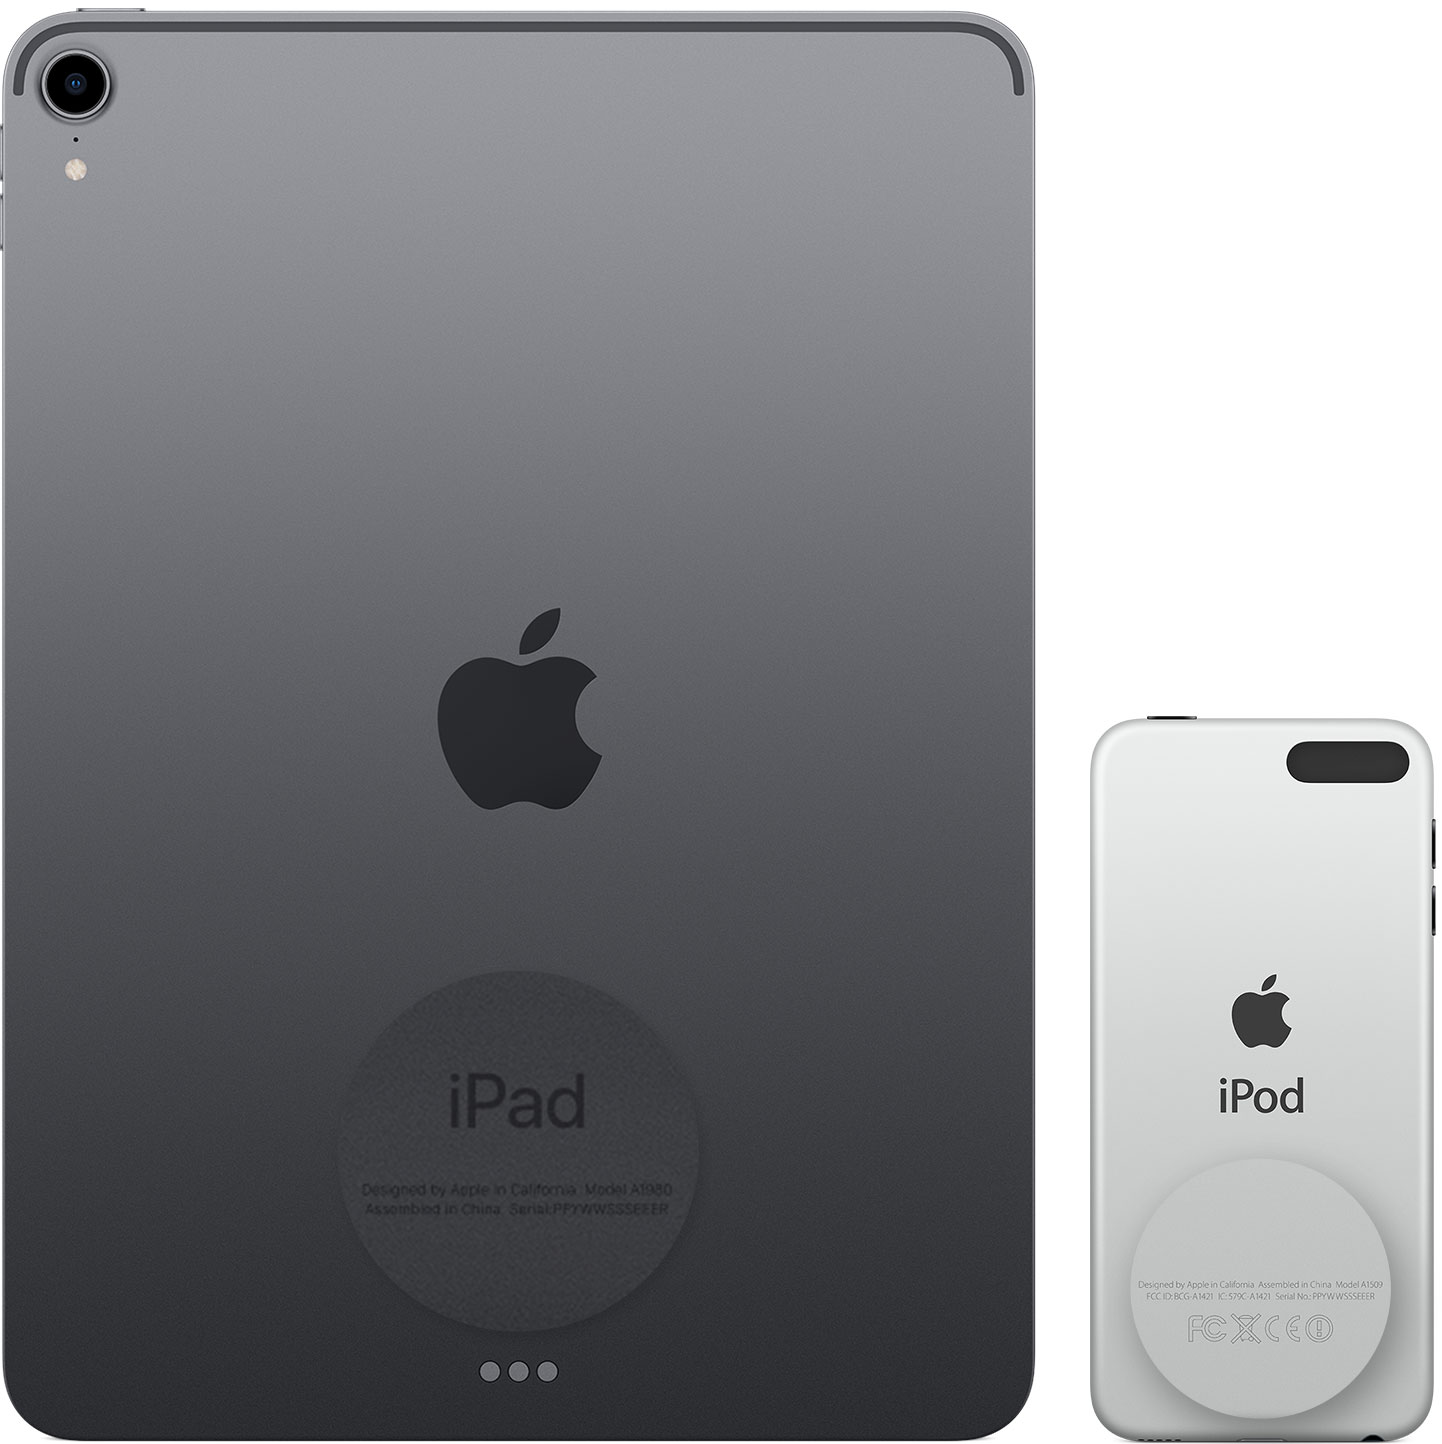 Εικόνα που δείχνει το πίσω μέρος ενός iPad και ενός iPod touch